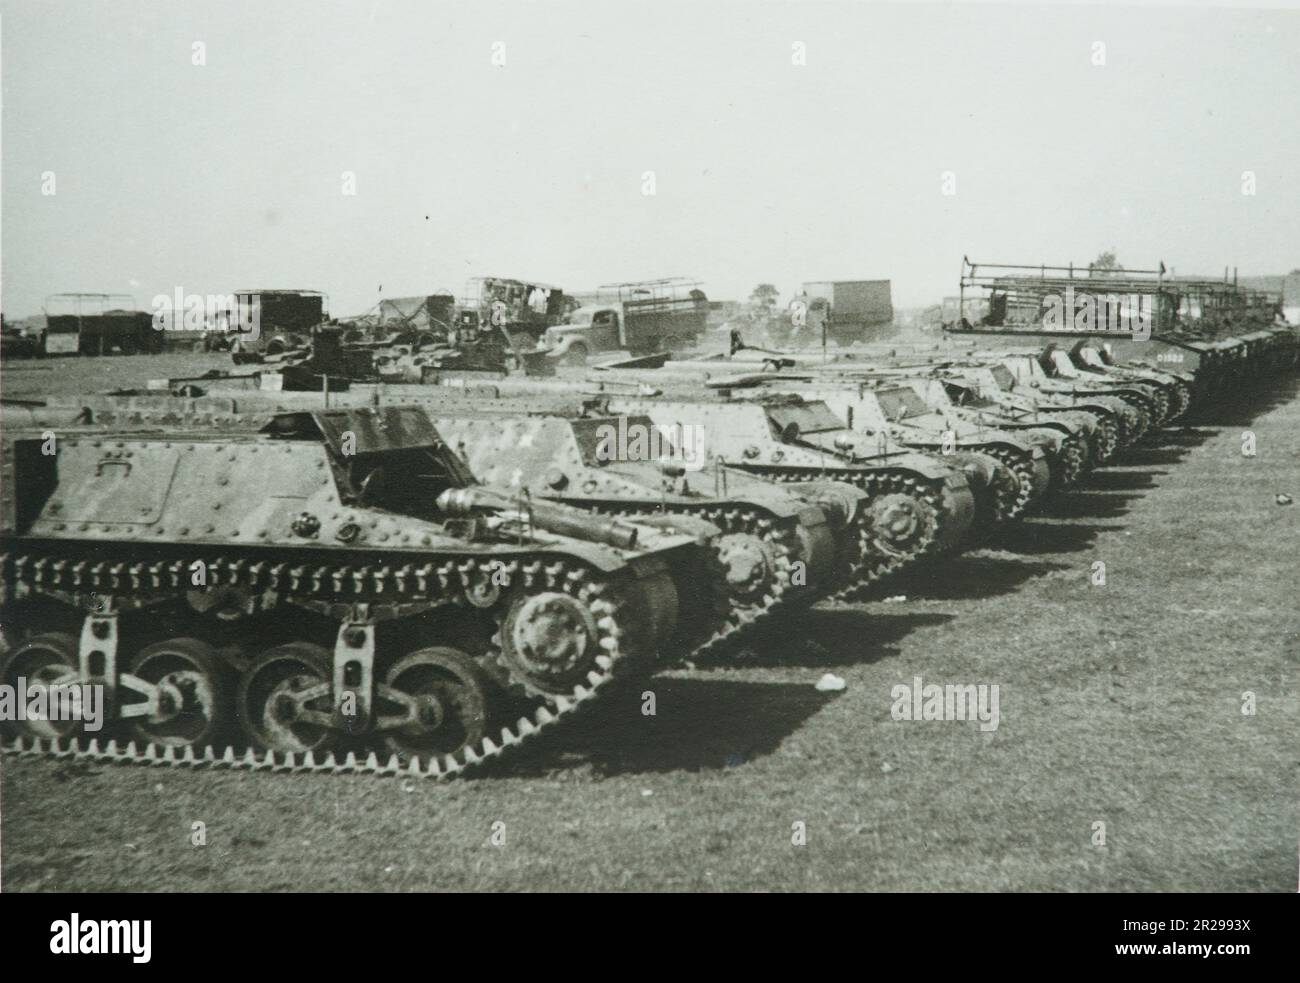 WW2 - Seconde Guerre mondiale, deuxième guerre mondiale, chars capturés par des soldats allemands, Belgique - 1940 Banque D'Images